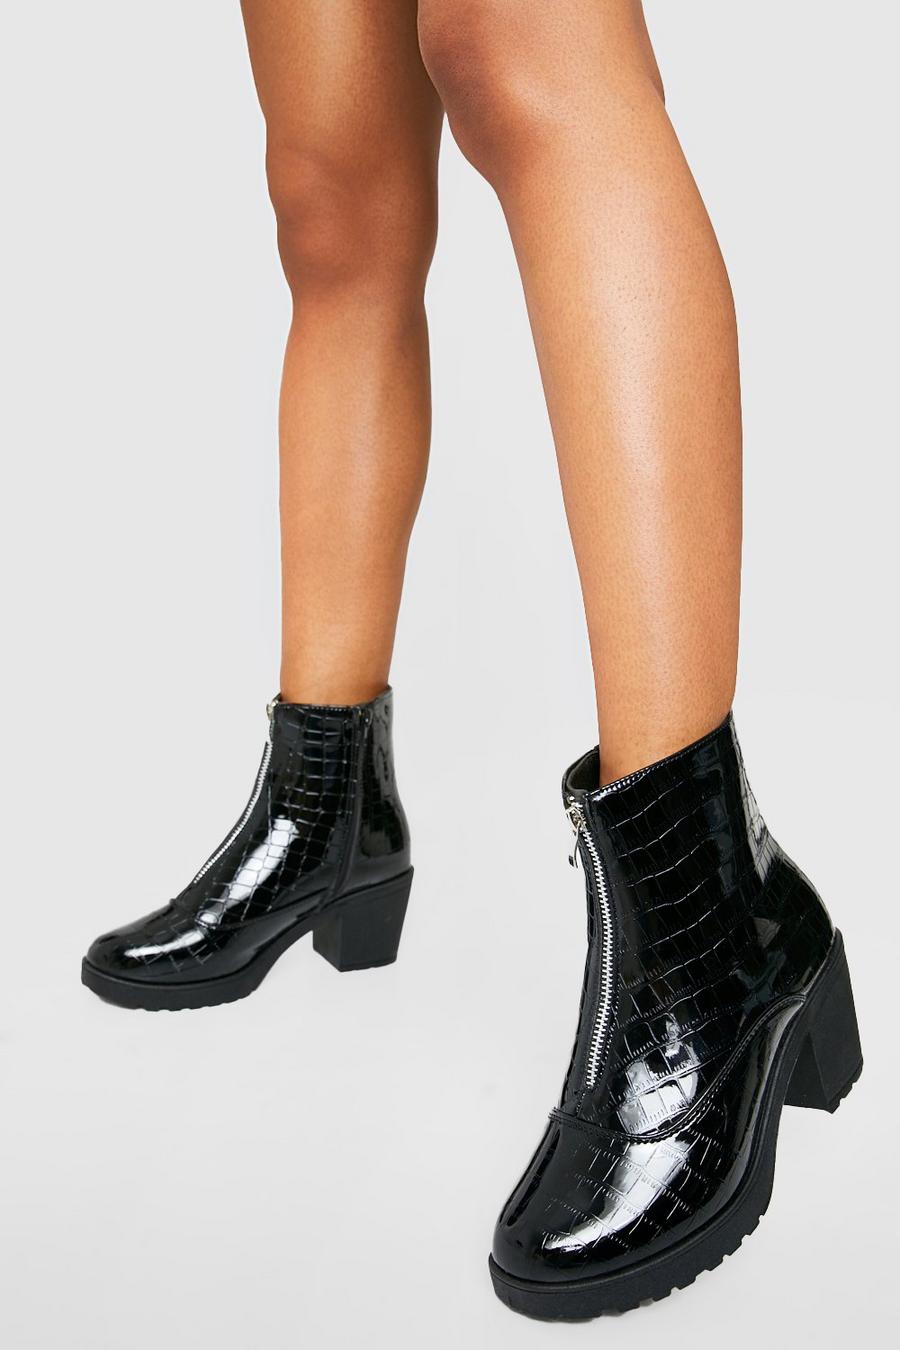 Lack Kroko Chelsea-Stiefel mit Blockabsatz und Reißverschluss, Black schwarz